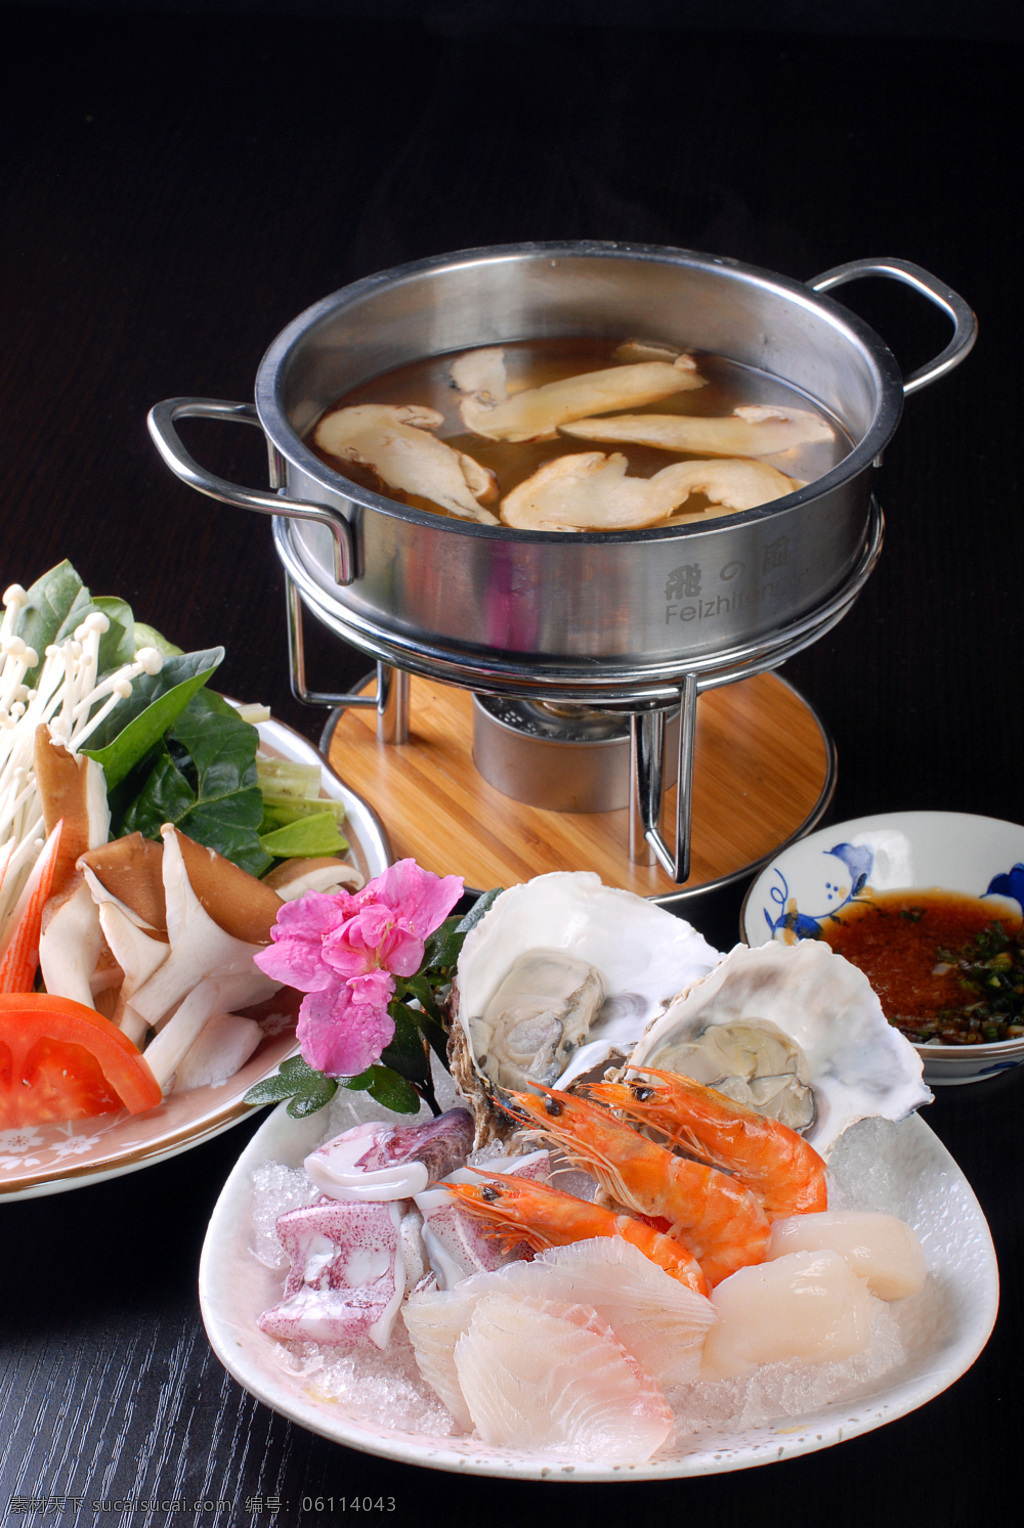 物松茸海鲜锅 美食 传统美食 餐饮美食 高清菜谱用图 食物原料